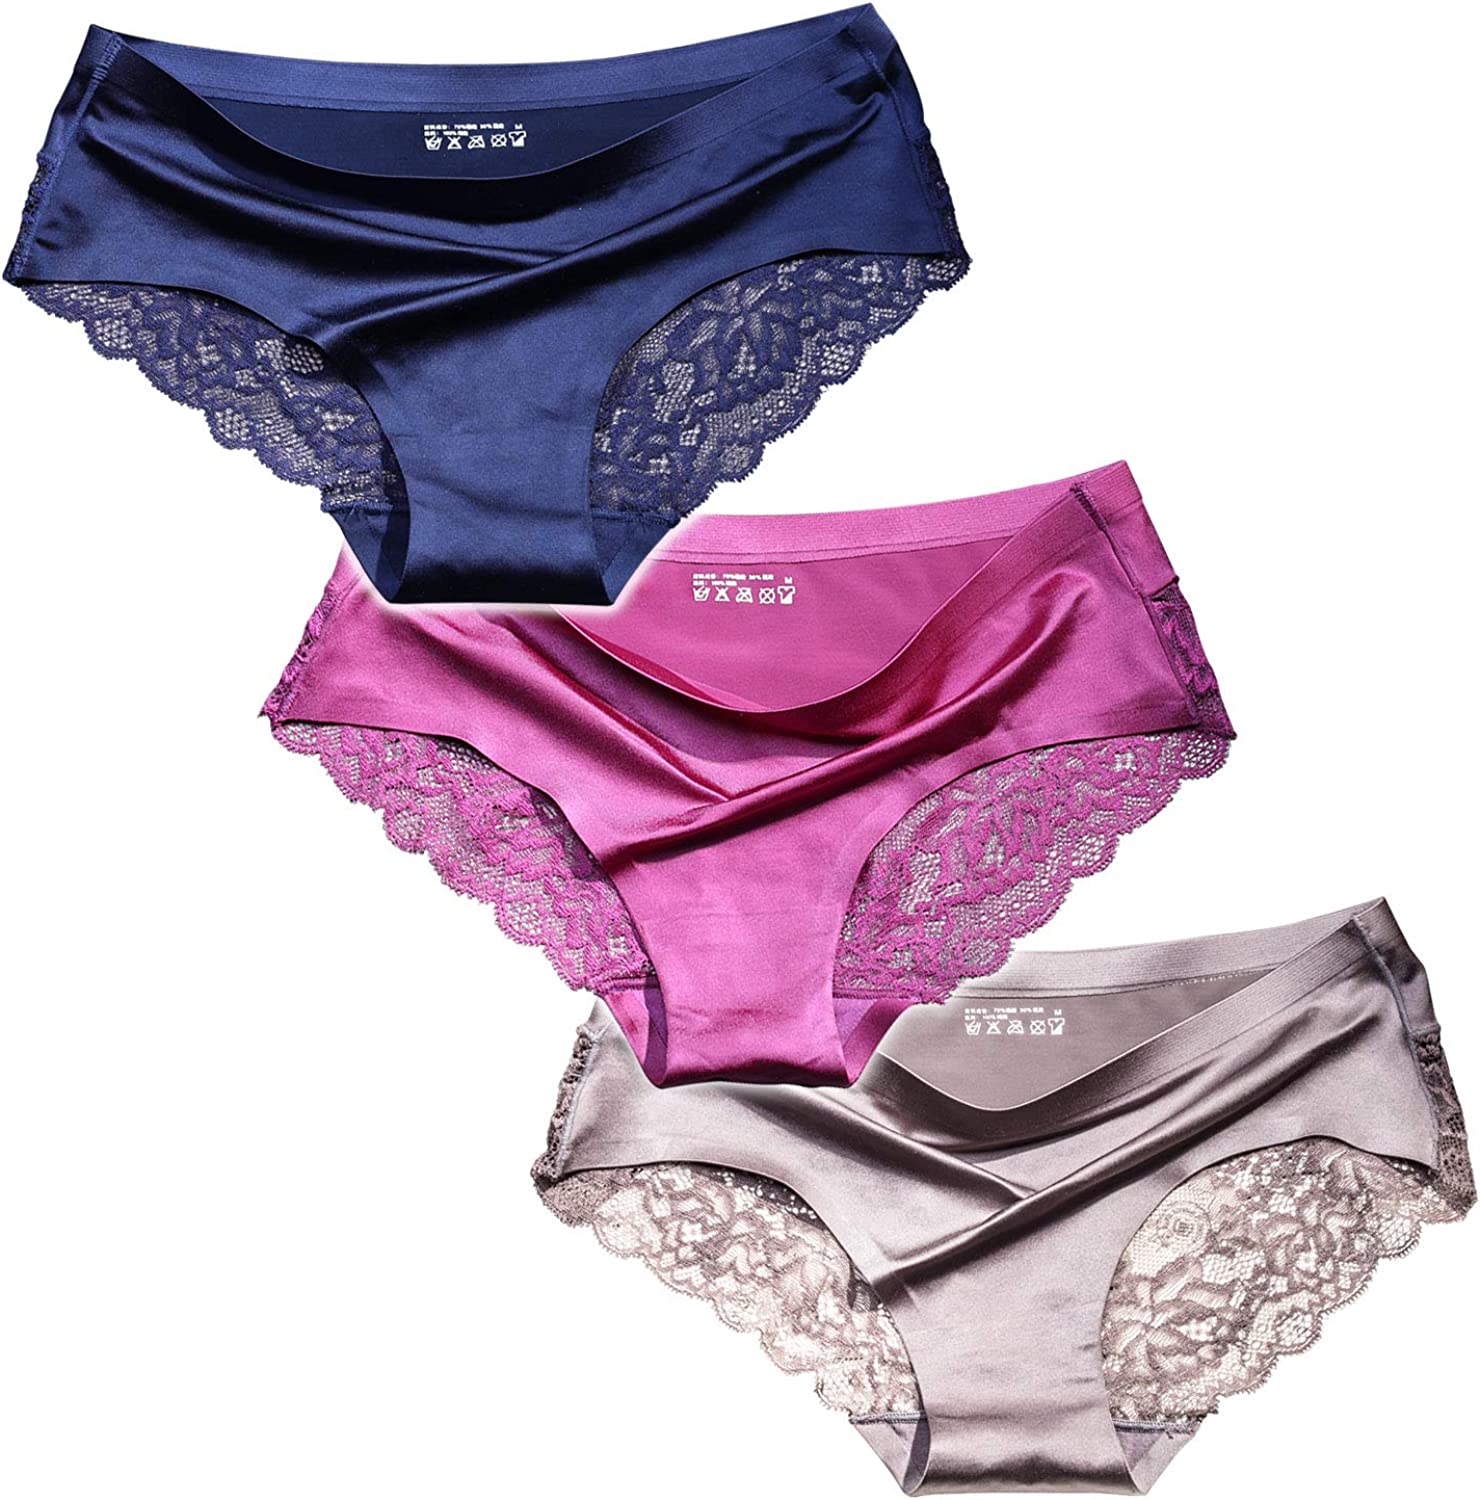  FINETOO Women's Seamless Underwear Soft Stretch Briefs